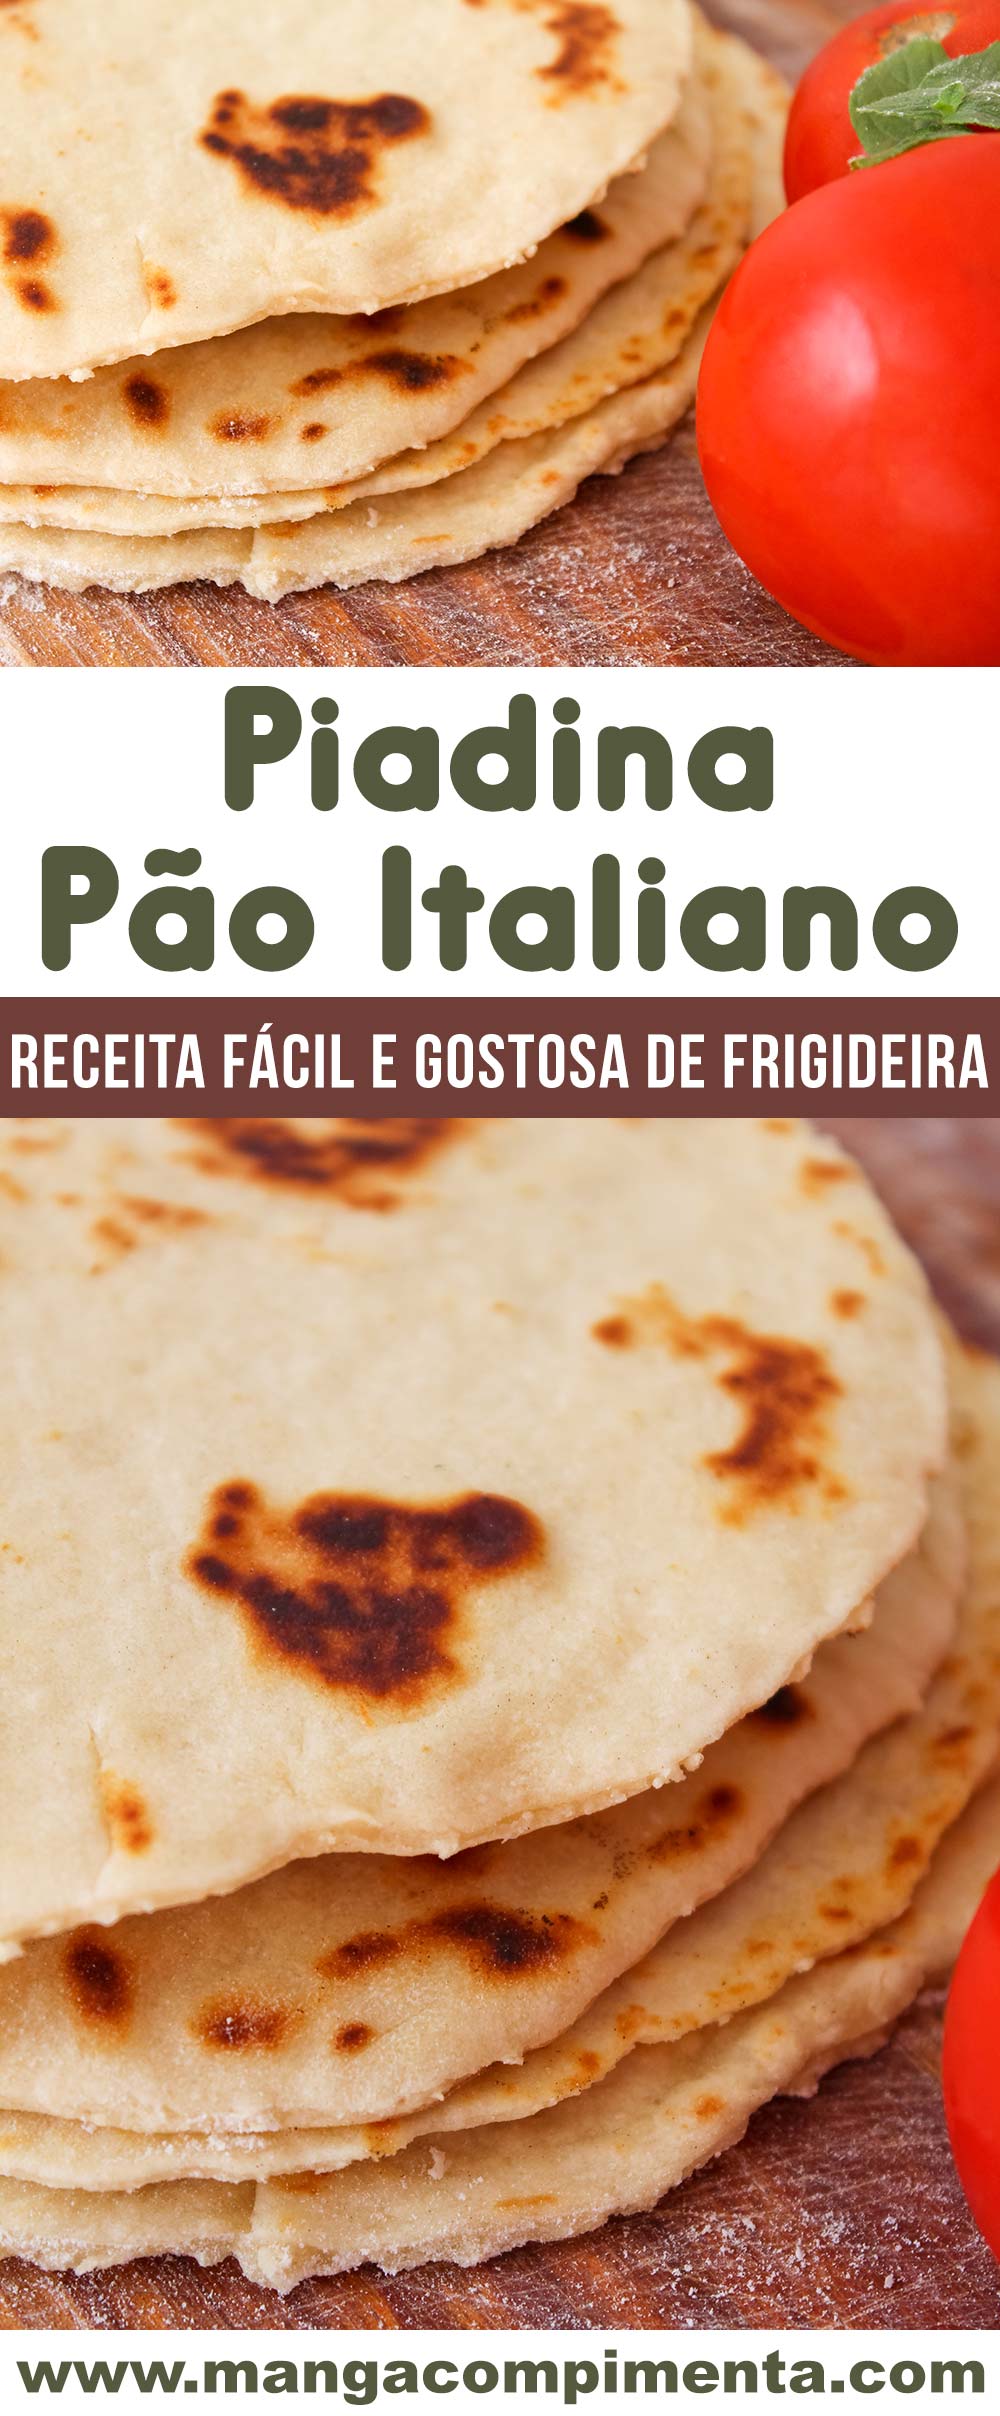 Piadina - Pão Italiano de Frigideira, delicioso para o lanche da tarde!